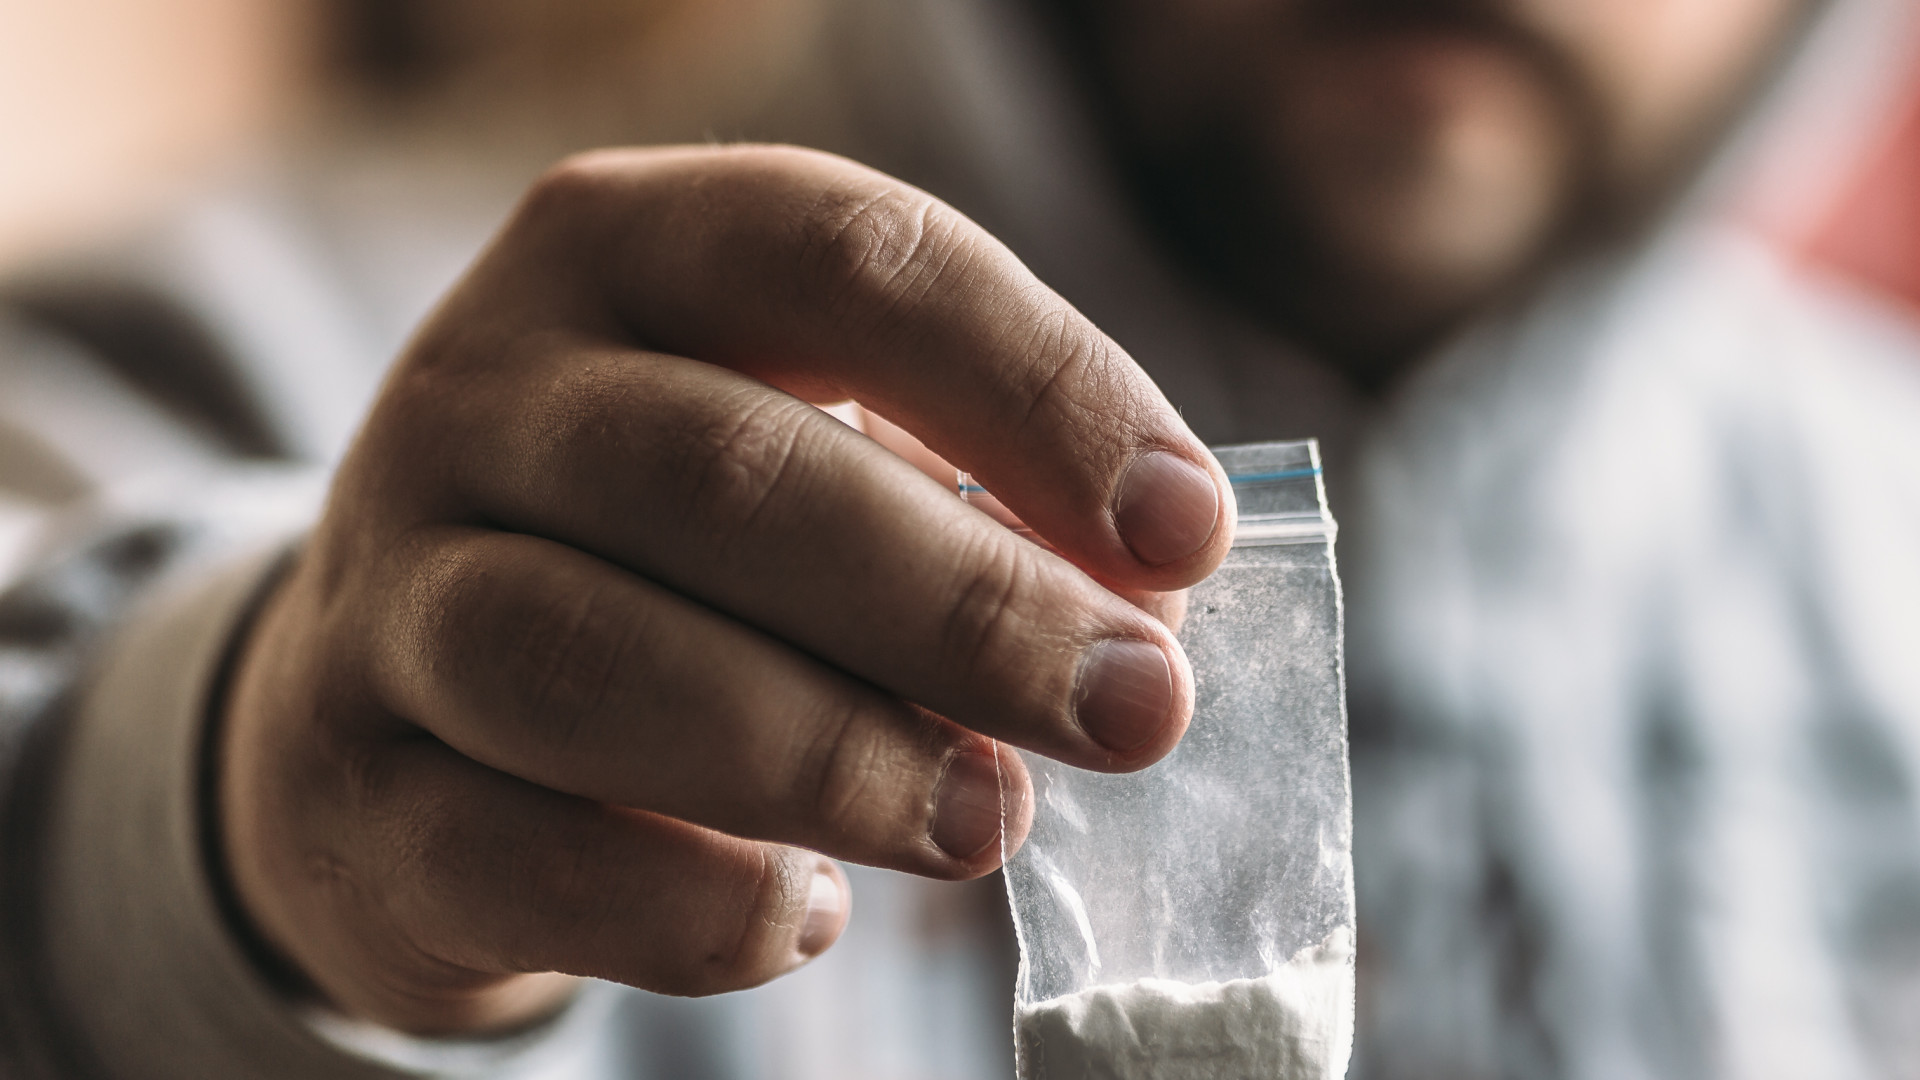 Psicoestimulantes podem ajudar no tratamento da dependência à cocaína